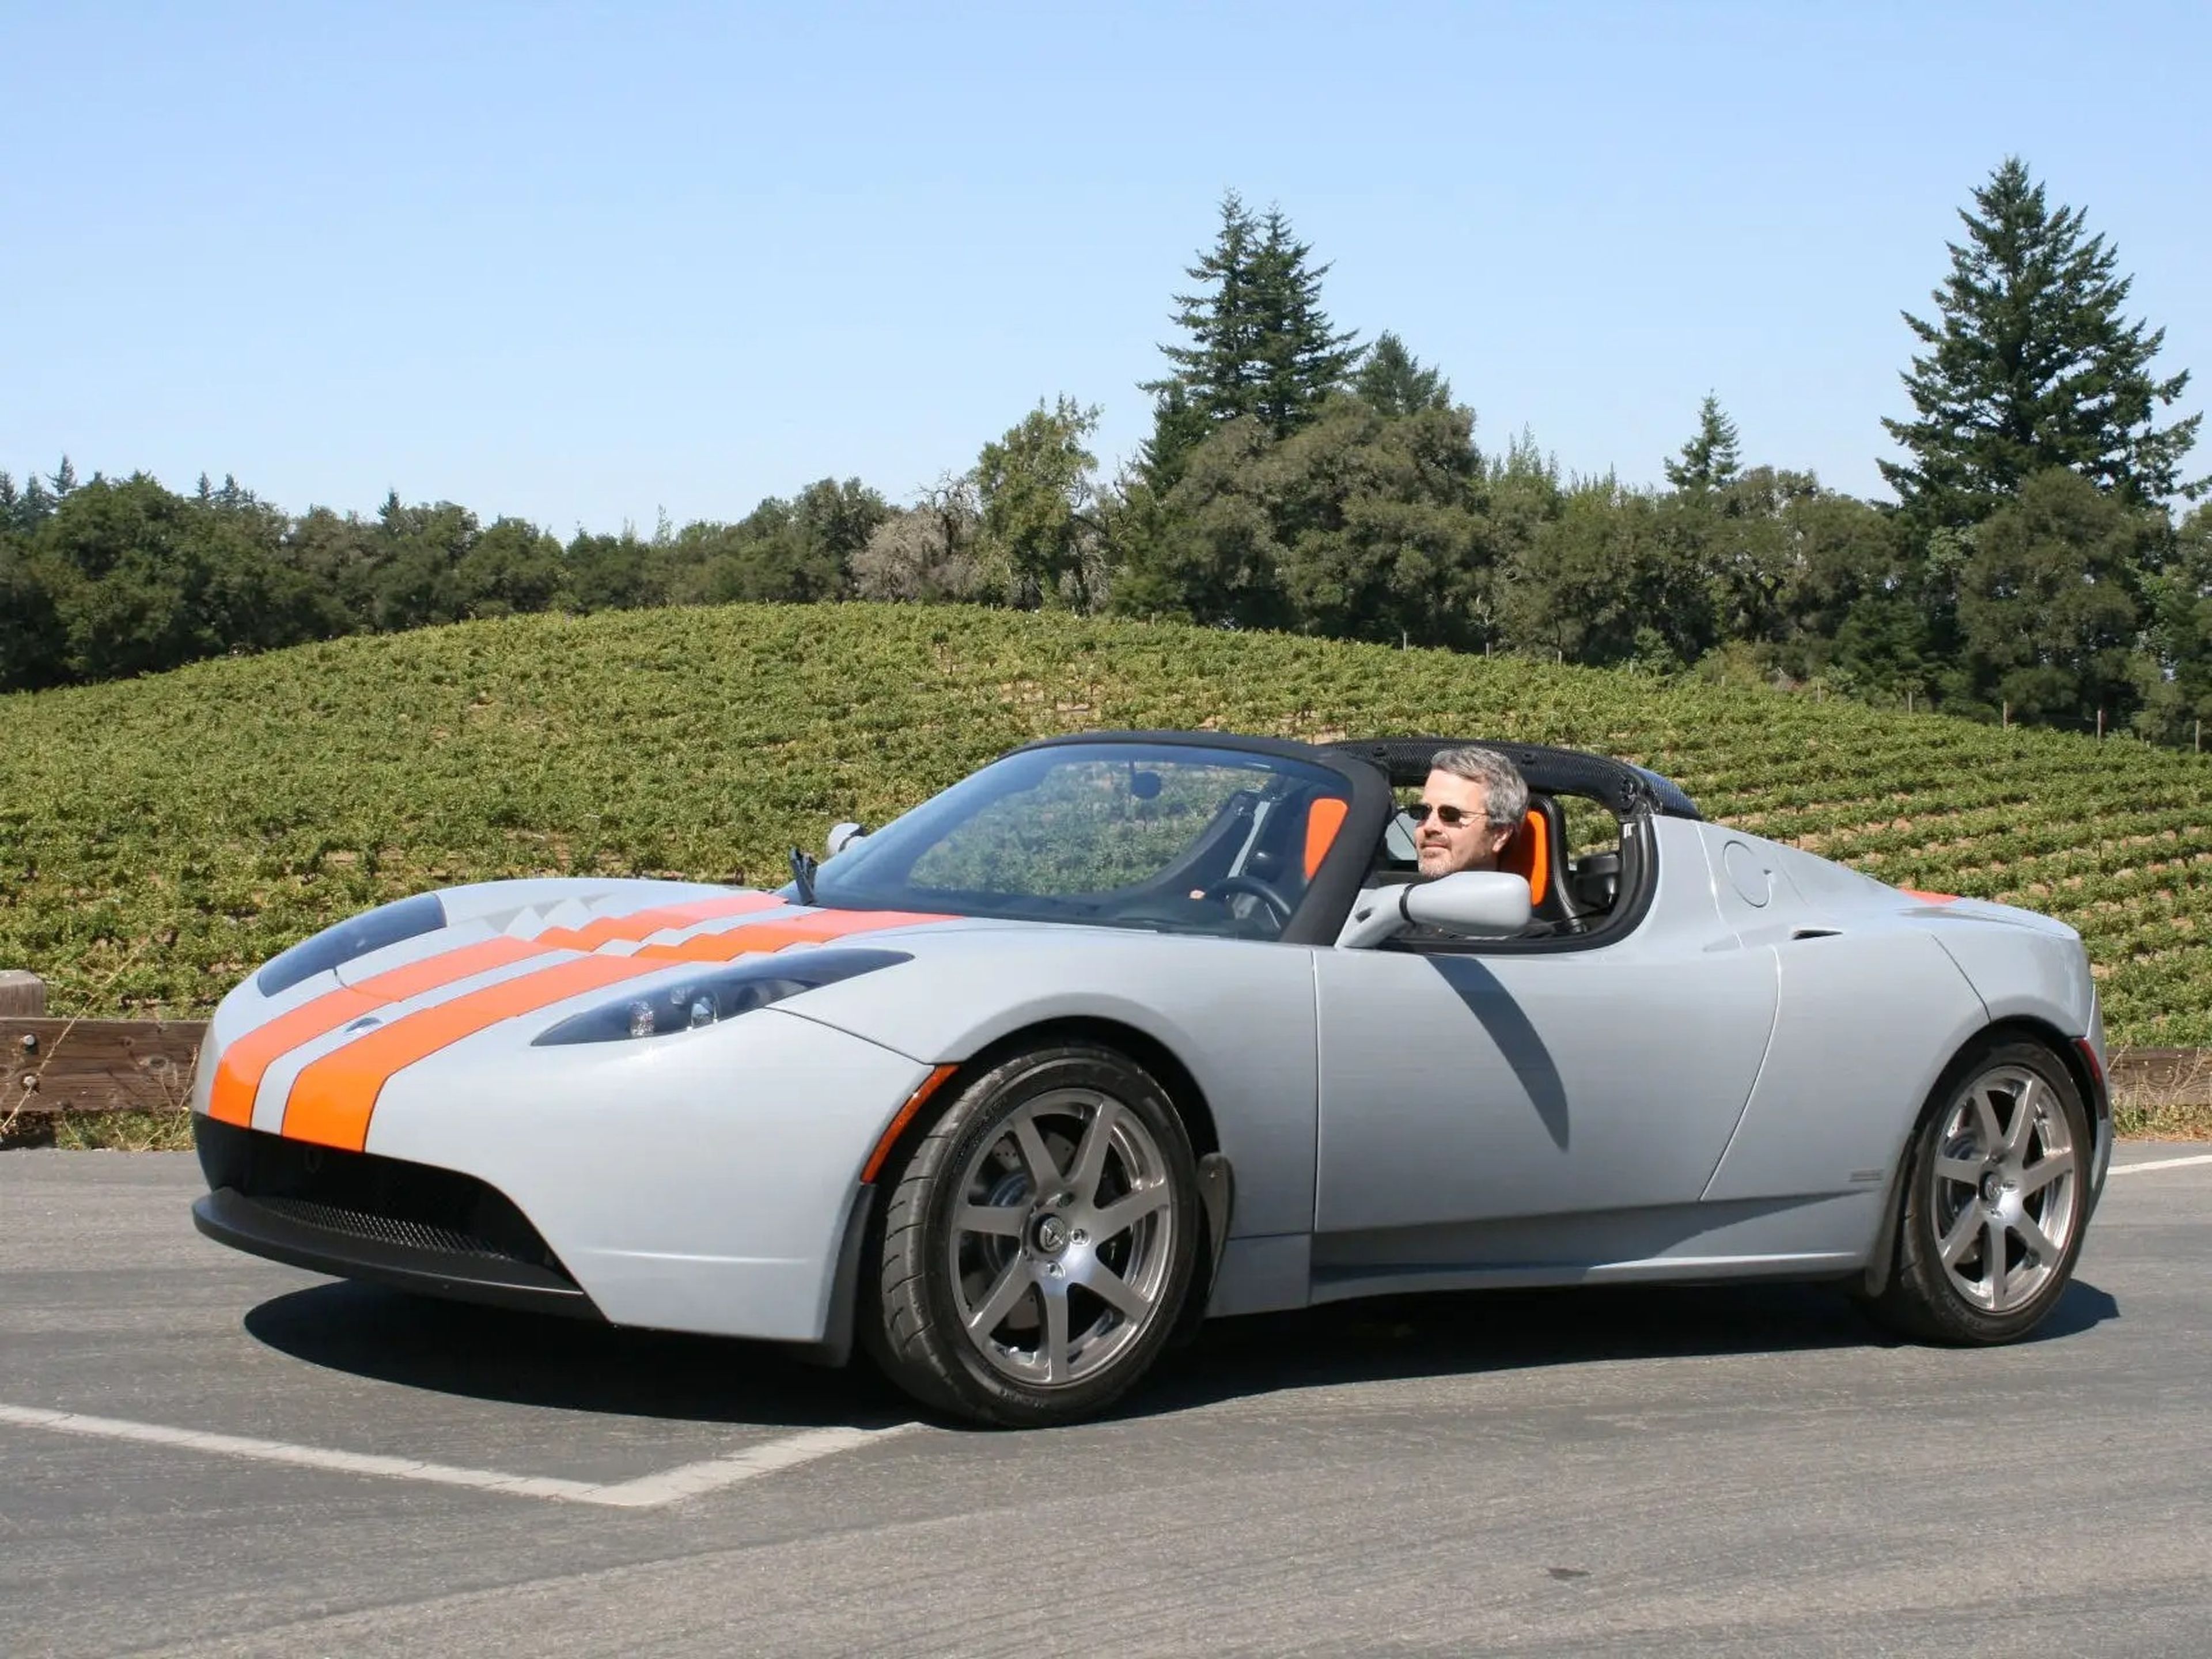 Eberhard afirma que posee 2 Tesla Roadster, incluido el segundo Roadster fabricado.